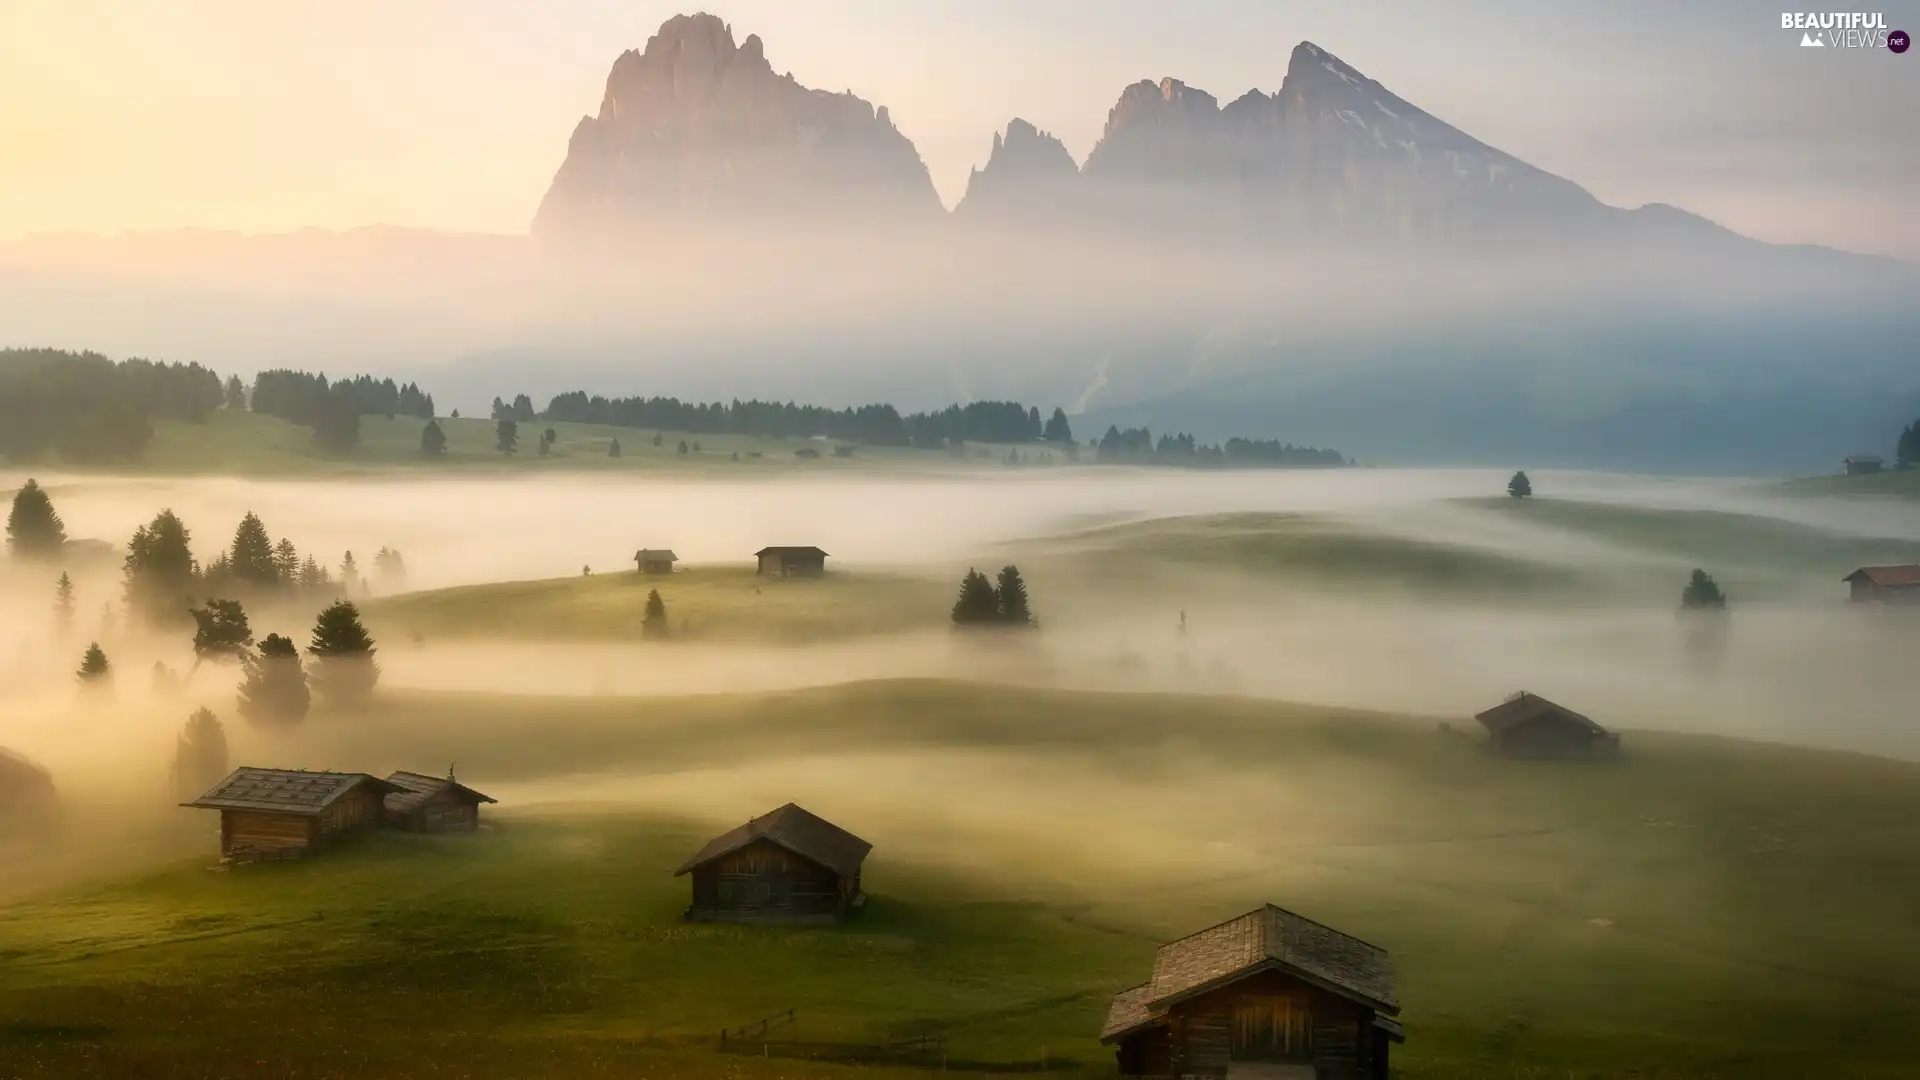 Seiser Alm Meadow, Italy, Val Gardena Valley, Dolomites, viewes, Fog, Houses, trees, Sassolungo Mountains